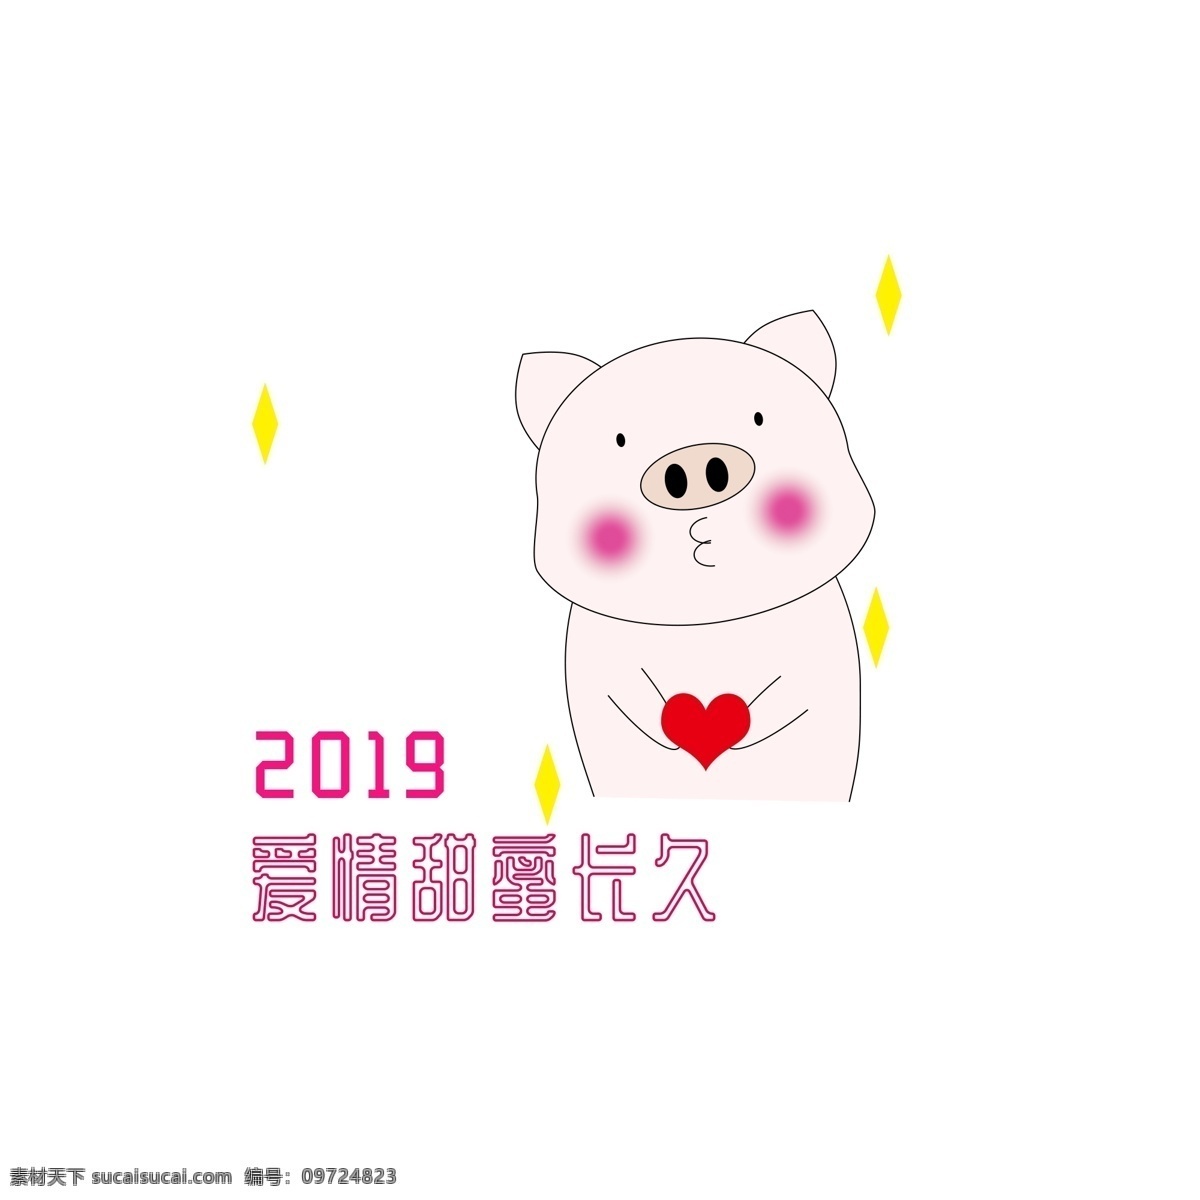 2019 猪年 手绘 可爱 猪 图 祝福 爱情 甜蜜 2019年 爱心 猪年祝福 爱情甜蜜长久